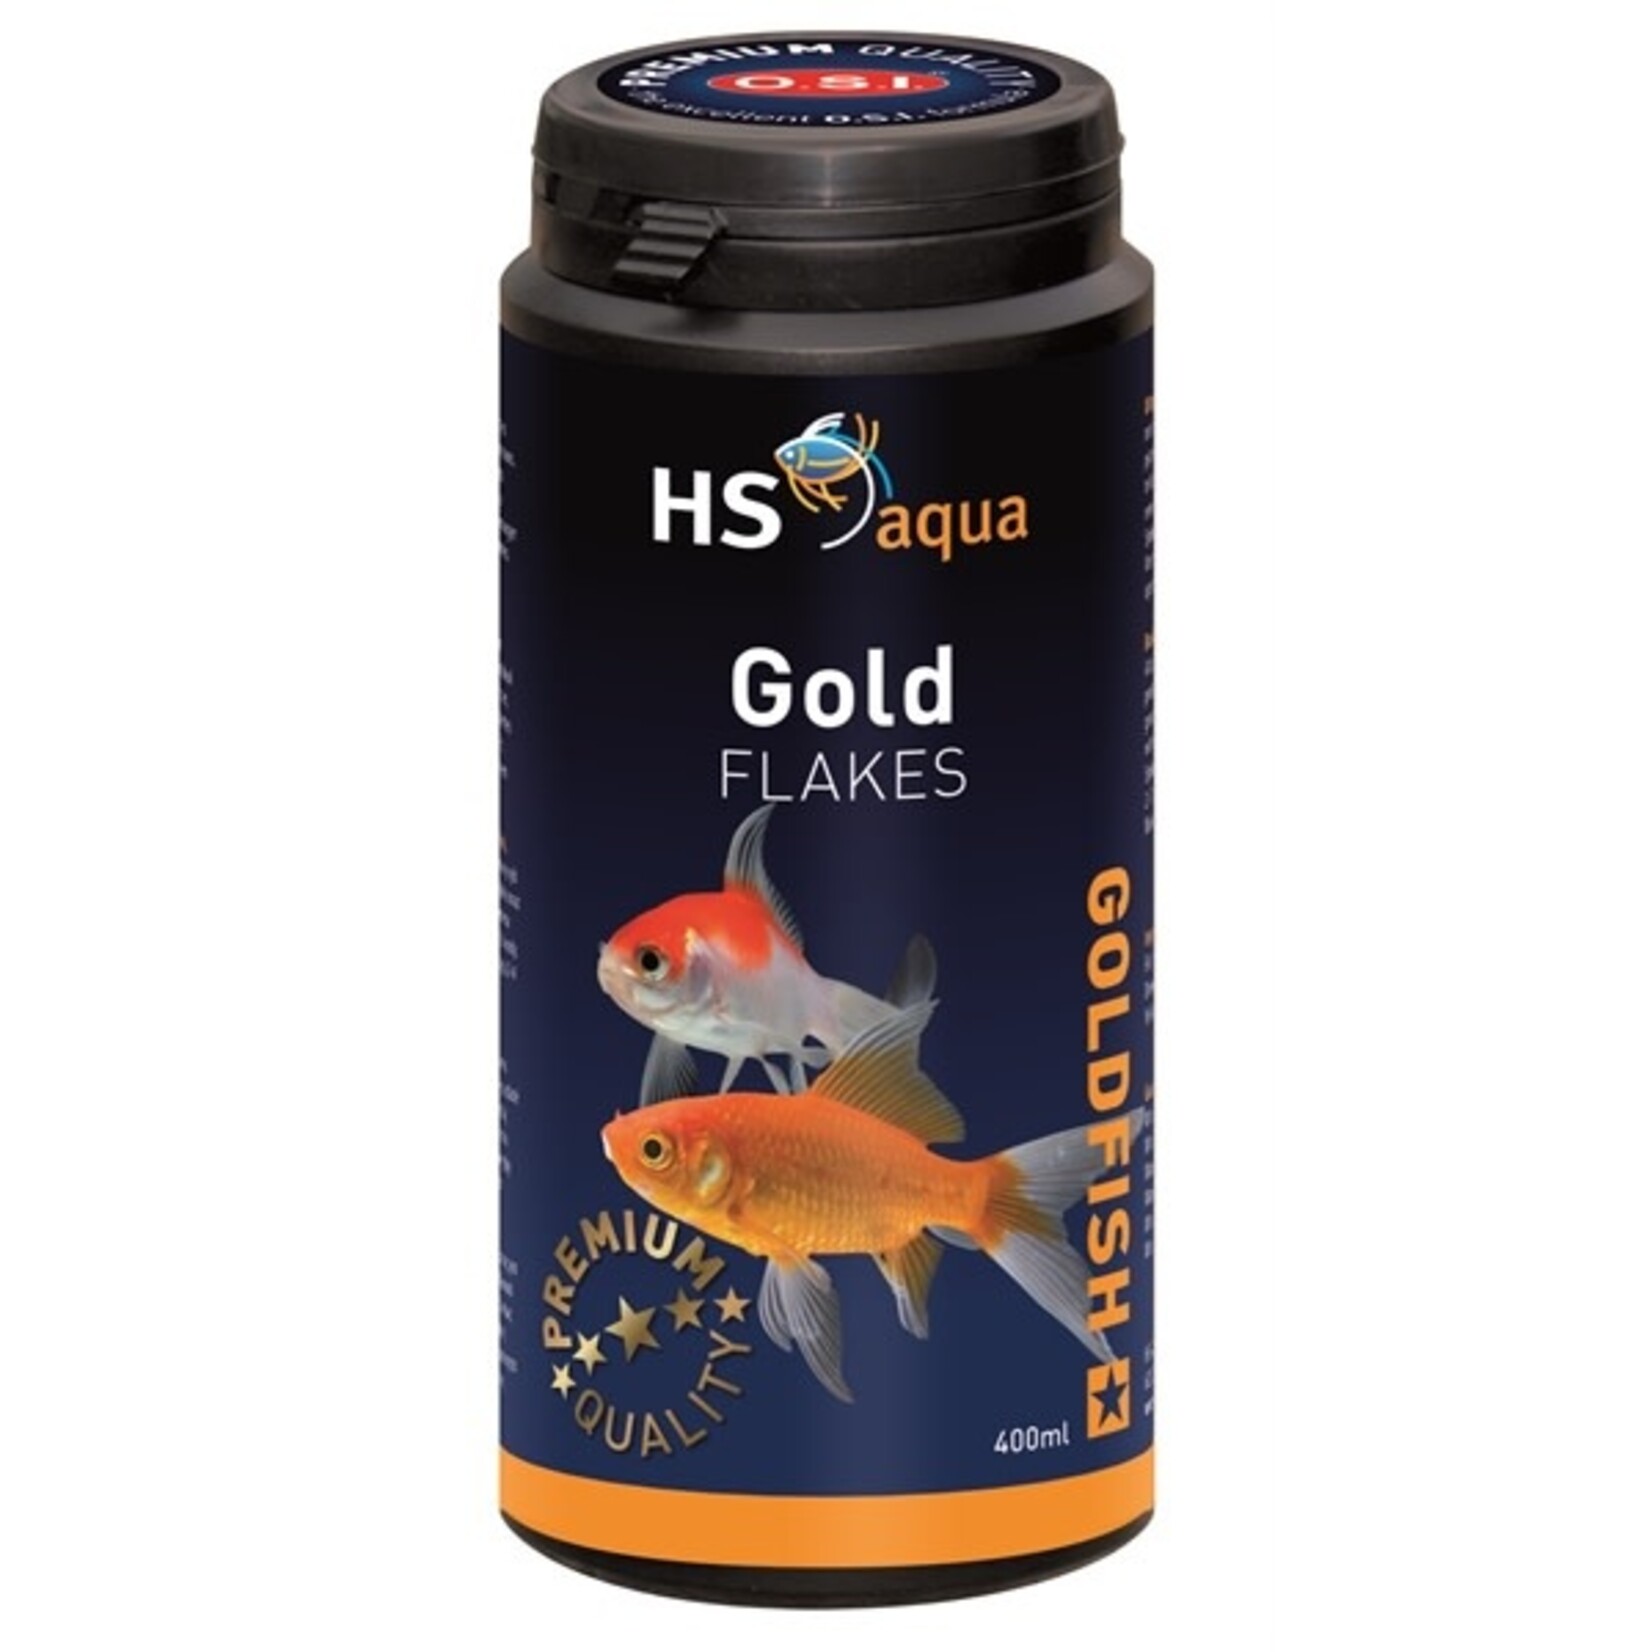 HS Aqua Gold flakes 400 ml